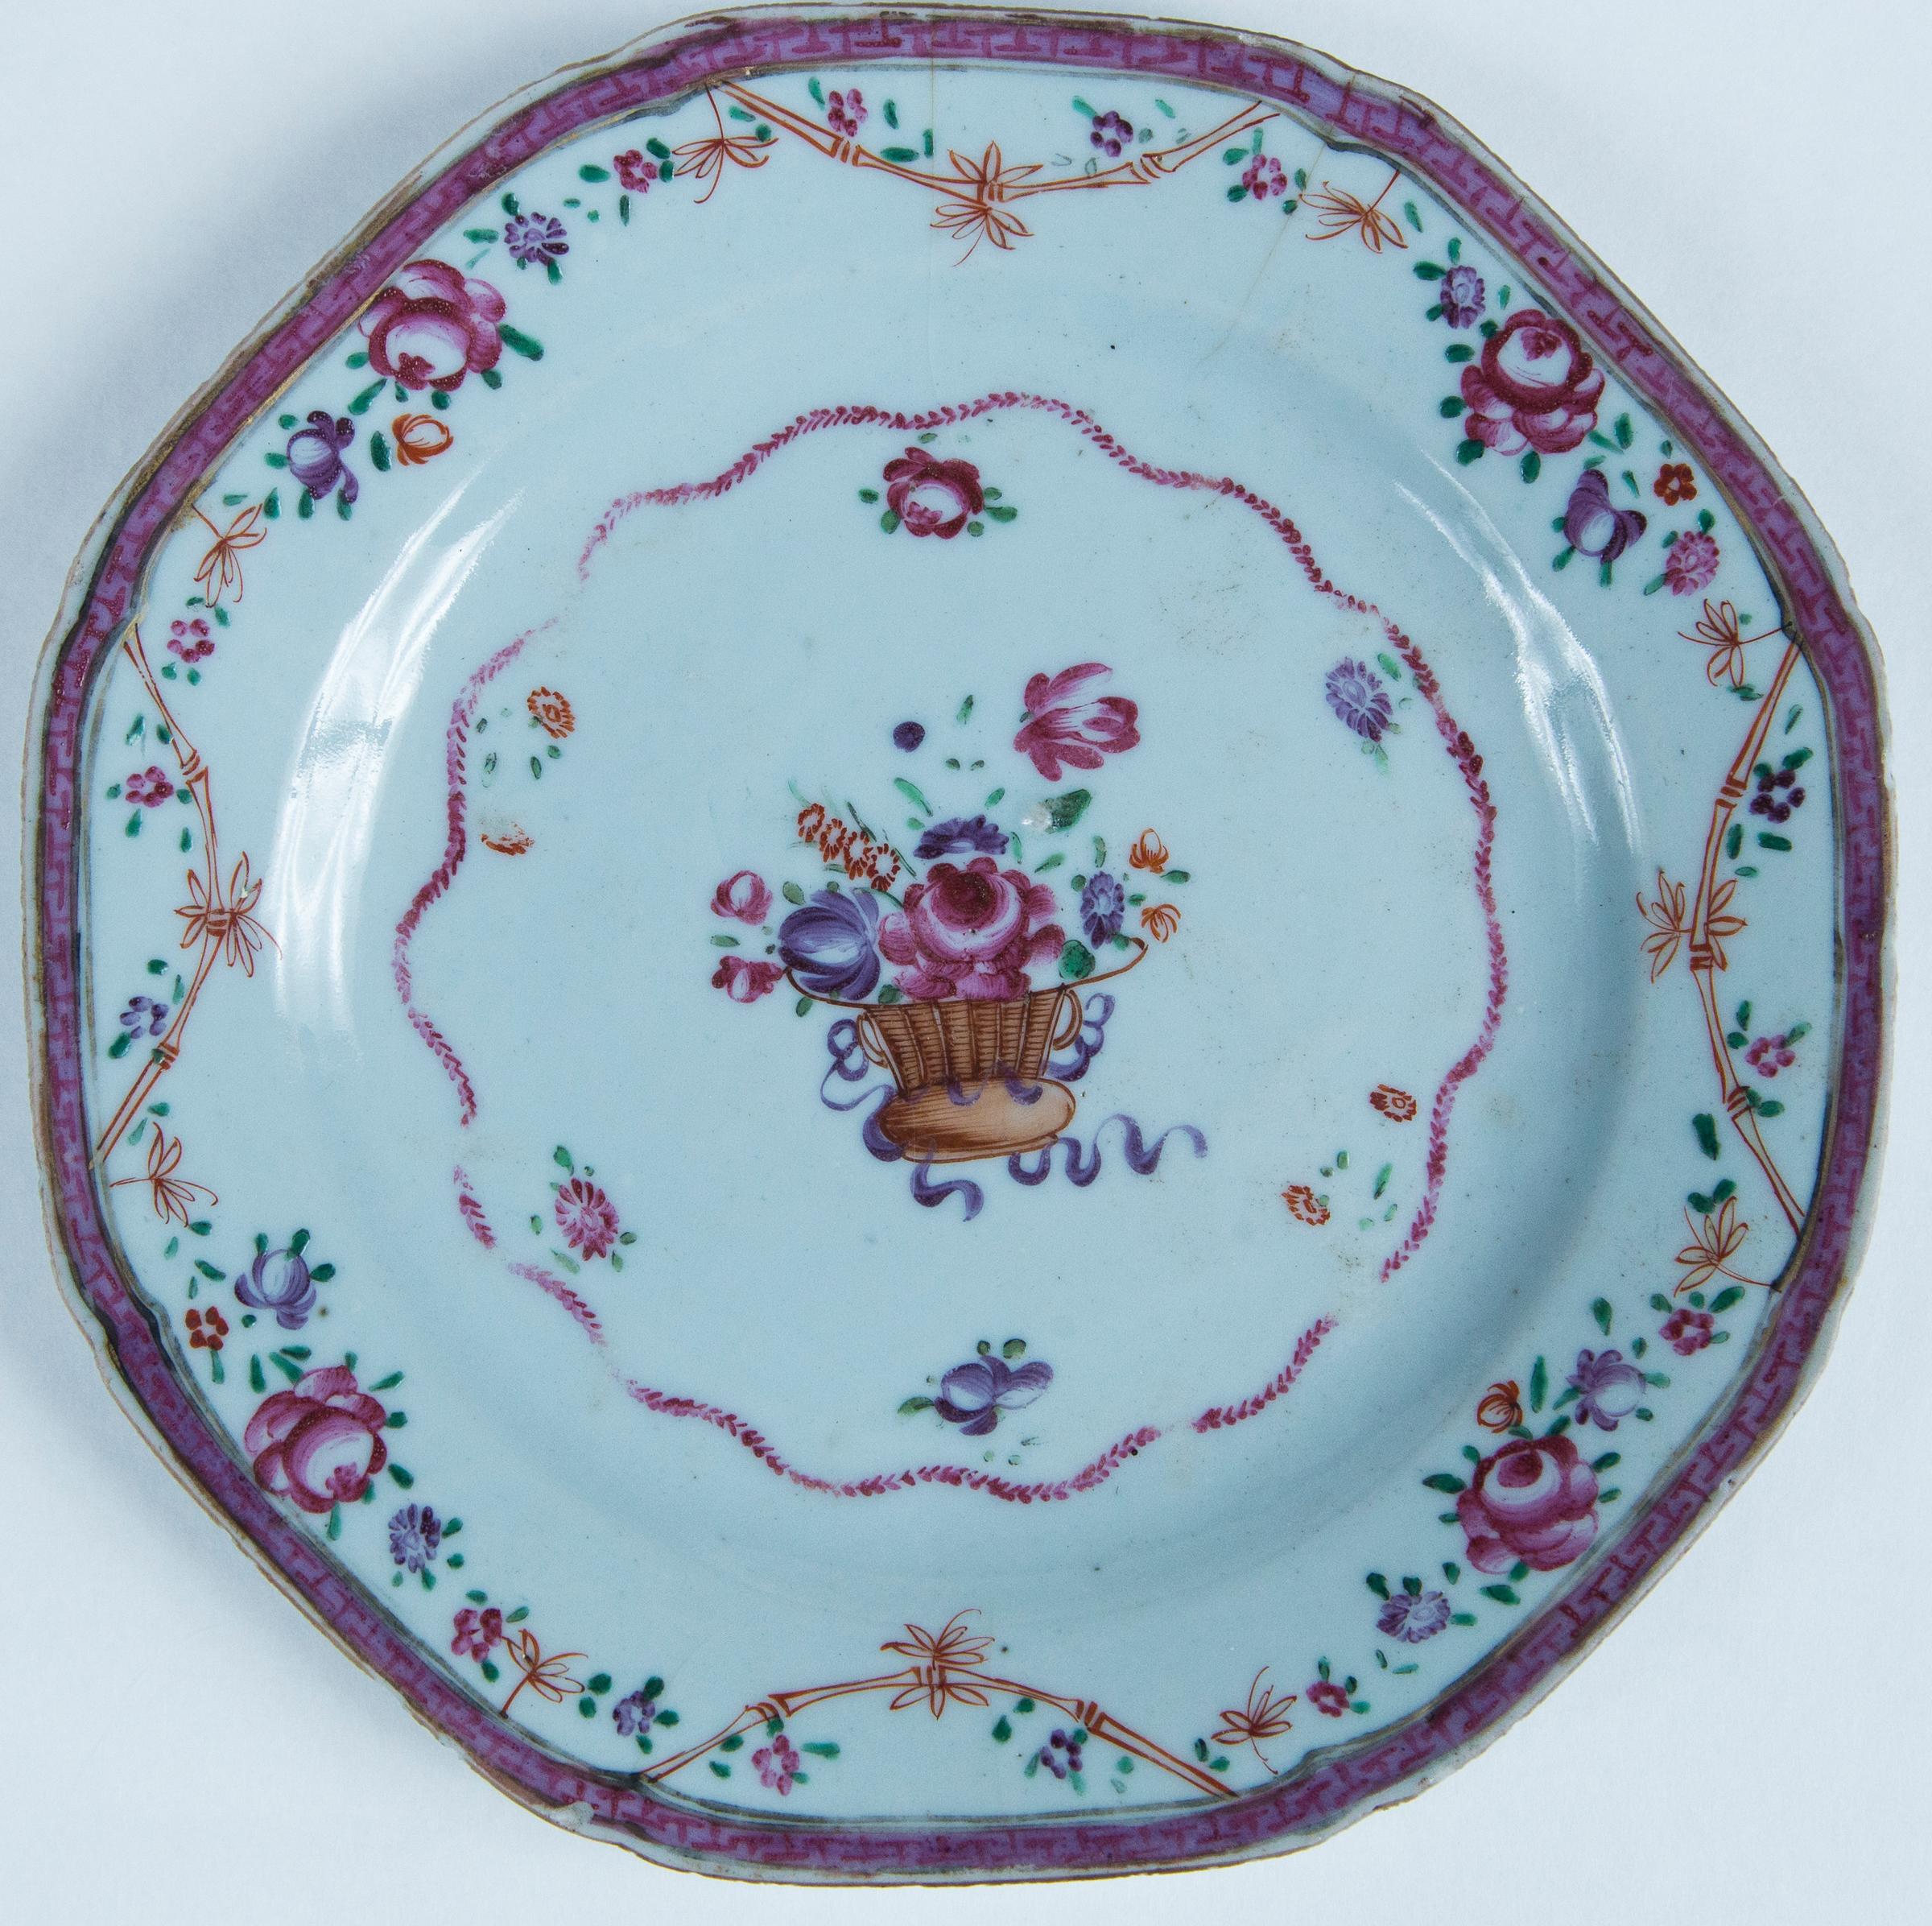 Deux assiettes en porcelaine d'exportation chinoise, début du XIXe siècle. Motifs floraux polychromes peints à la main avec des bordures détaillées.